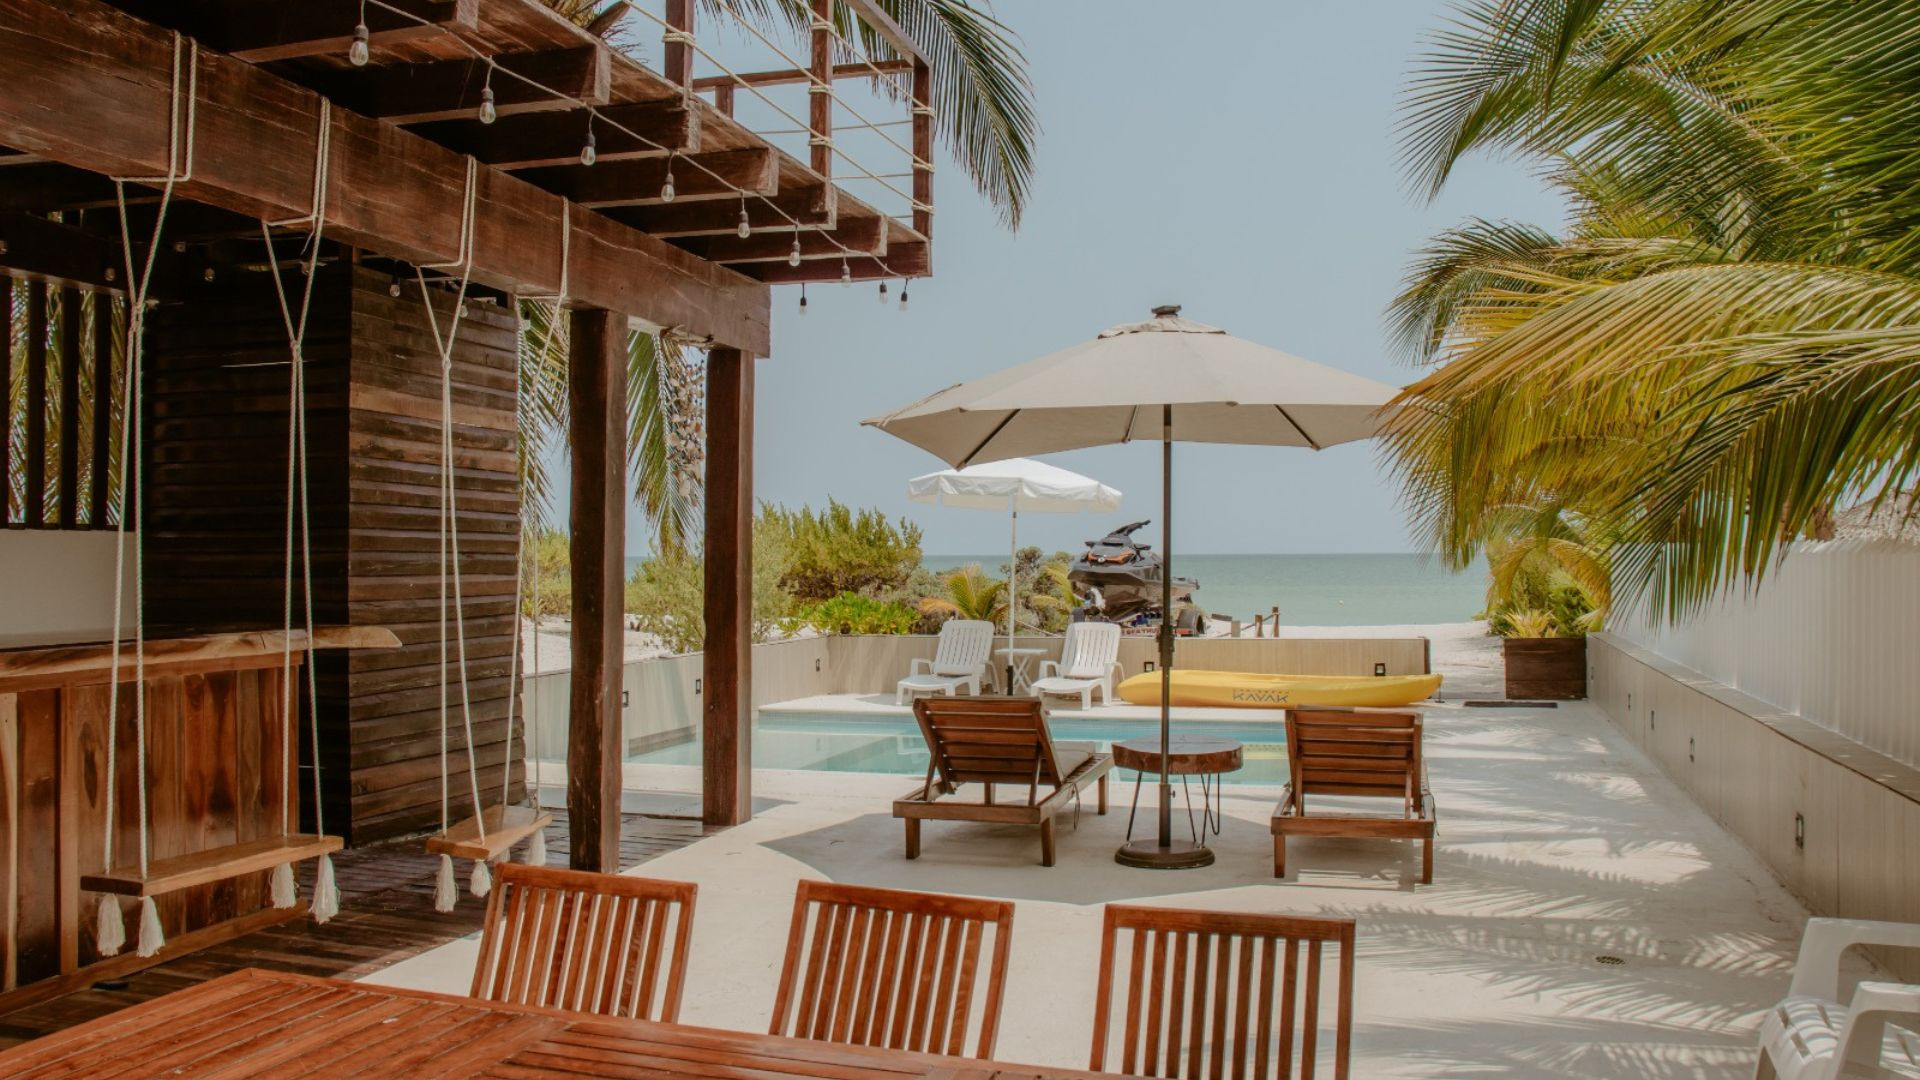 Cuba Libre Beach House: Un Airbnb escondido en la Playa de San Bruno